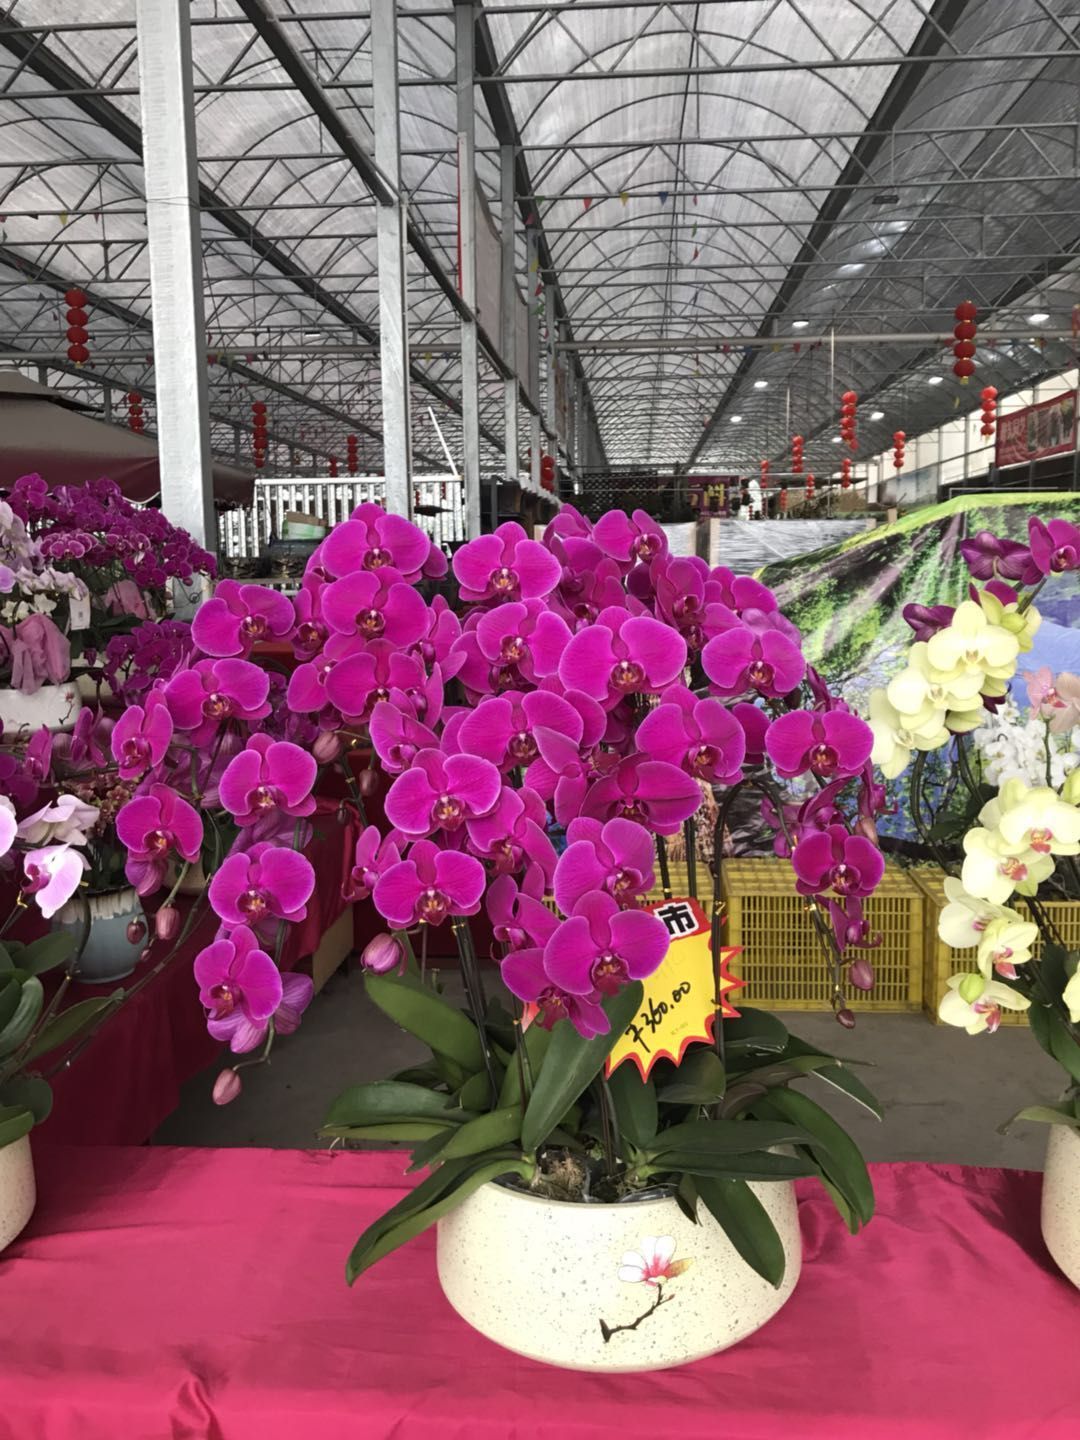 顺德陈村花卉市场图片